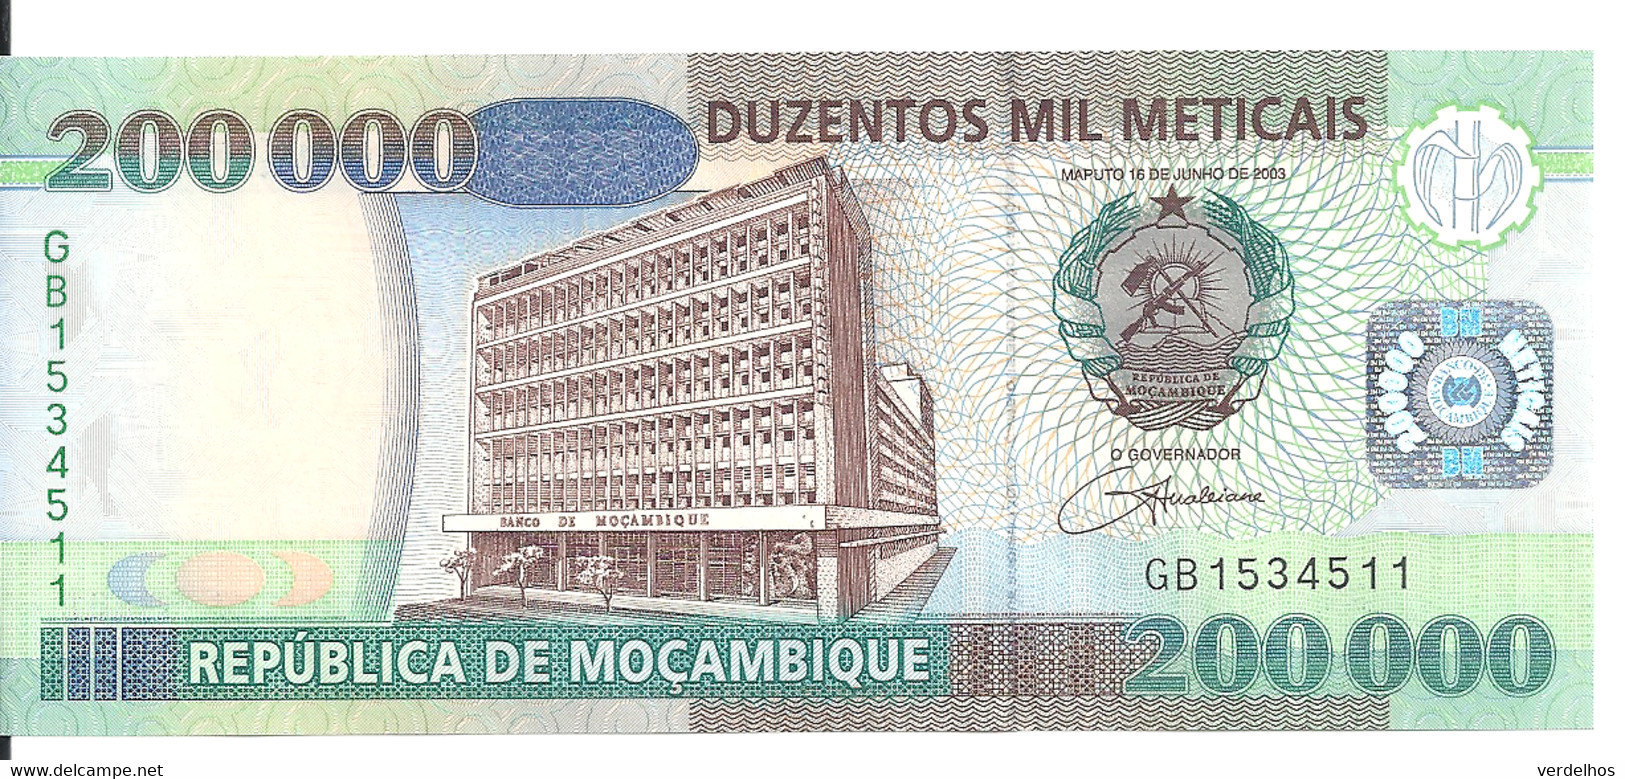 MOZAMBIQUE 200000 METICAIS 2003 UNC P 141 - Mozambique